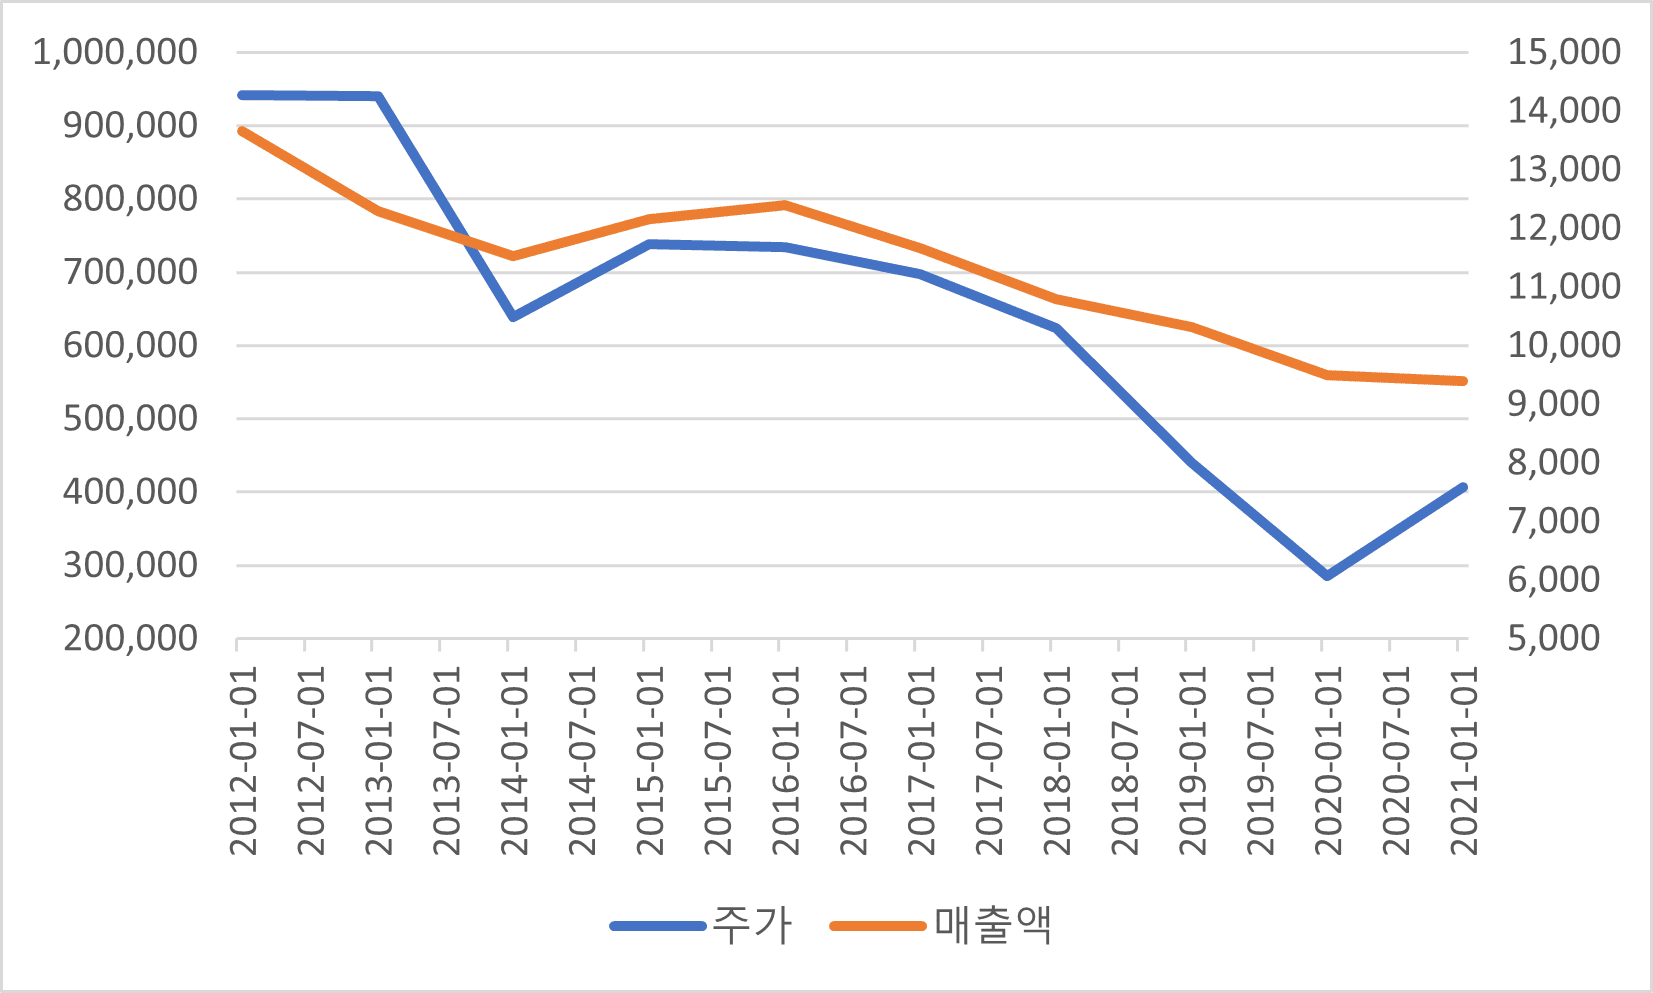 2012년 이후 남양유업의 주가(좌측)와 매출액(우측) 추이